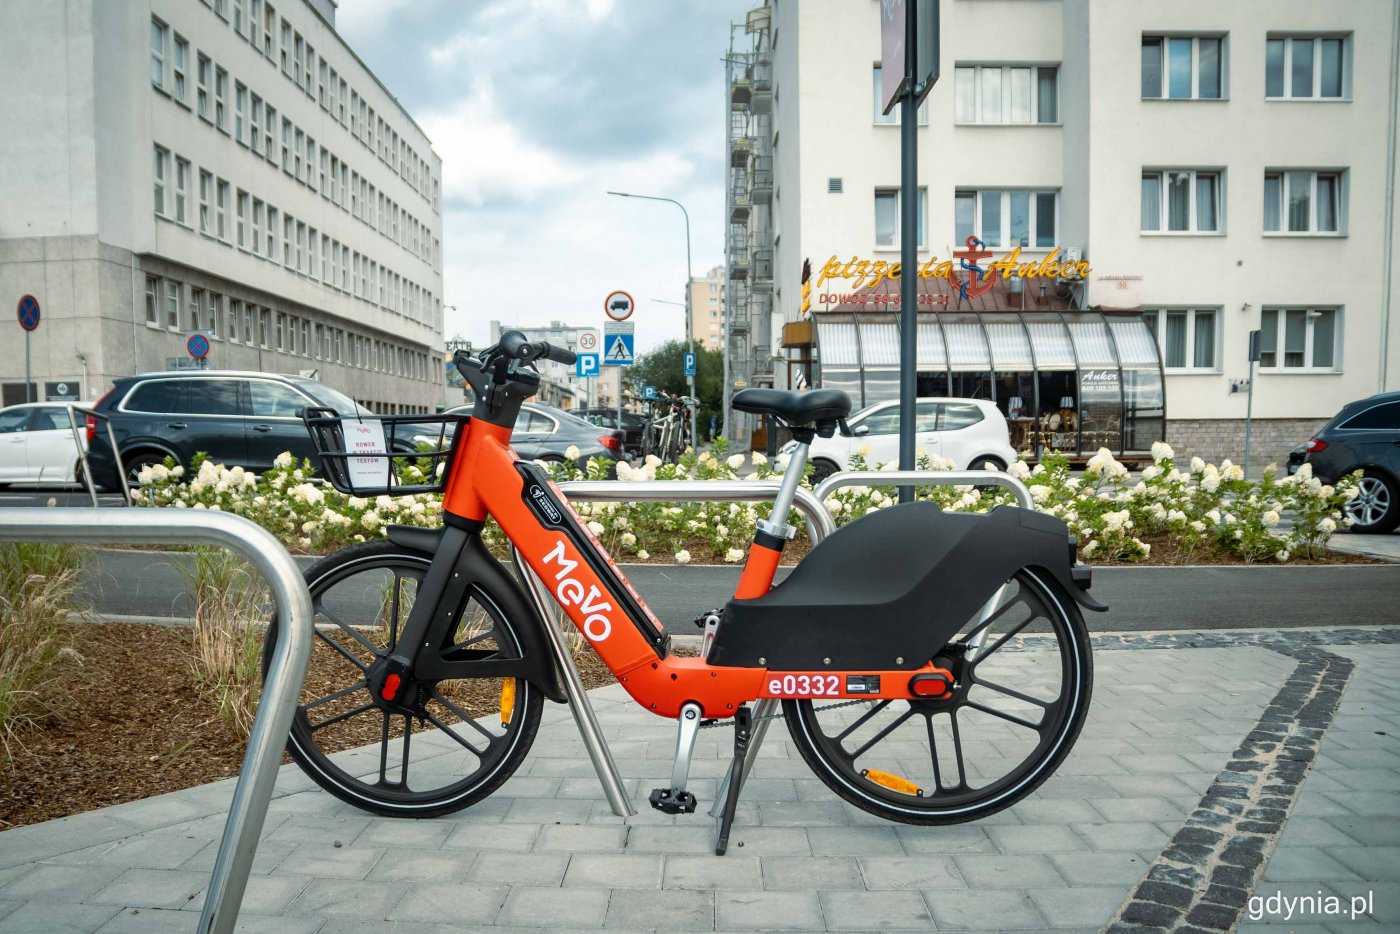 Czerwony rower mevo, na stojaku, chodnik, ulica Piłsudskiego w Gdyni, w tle budynki i Urząd Miasta, samochody